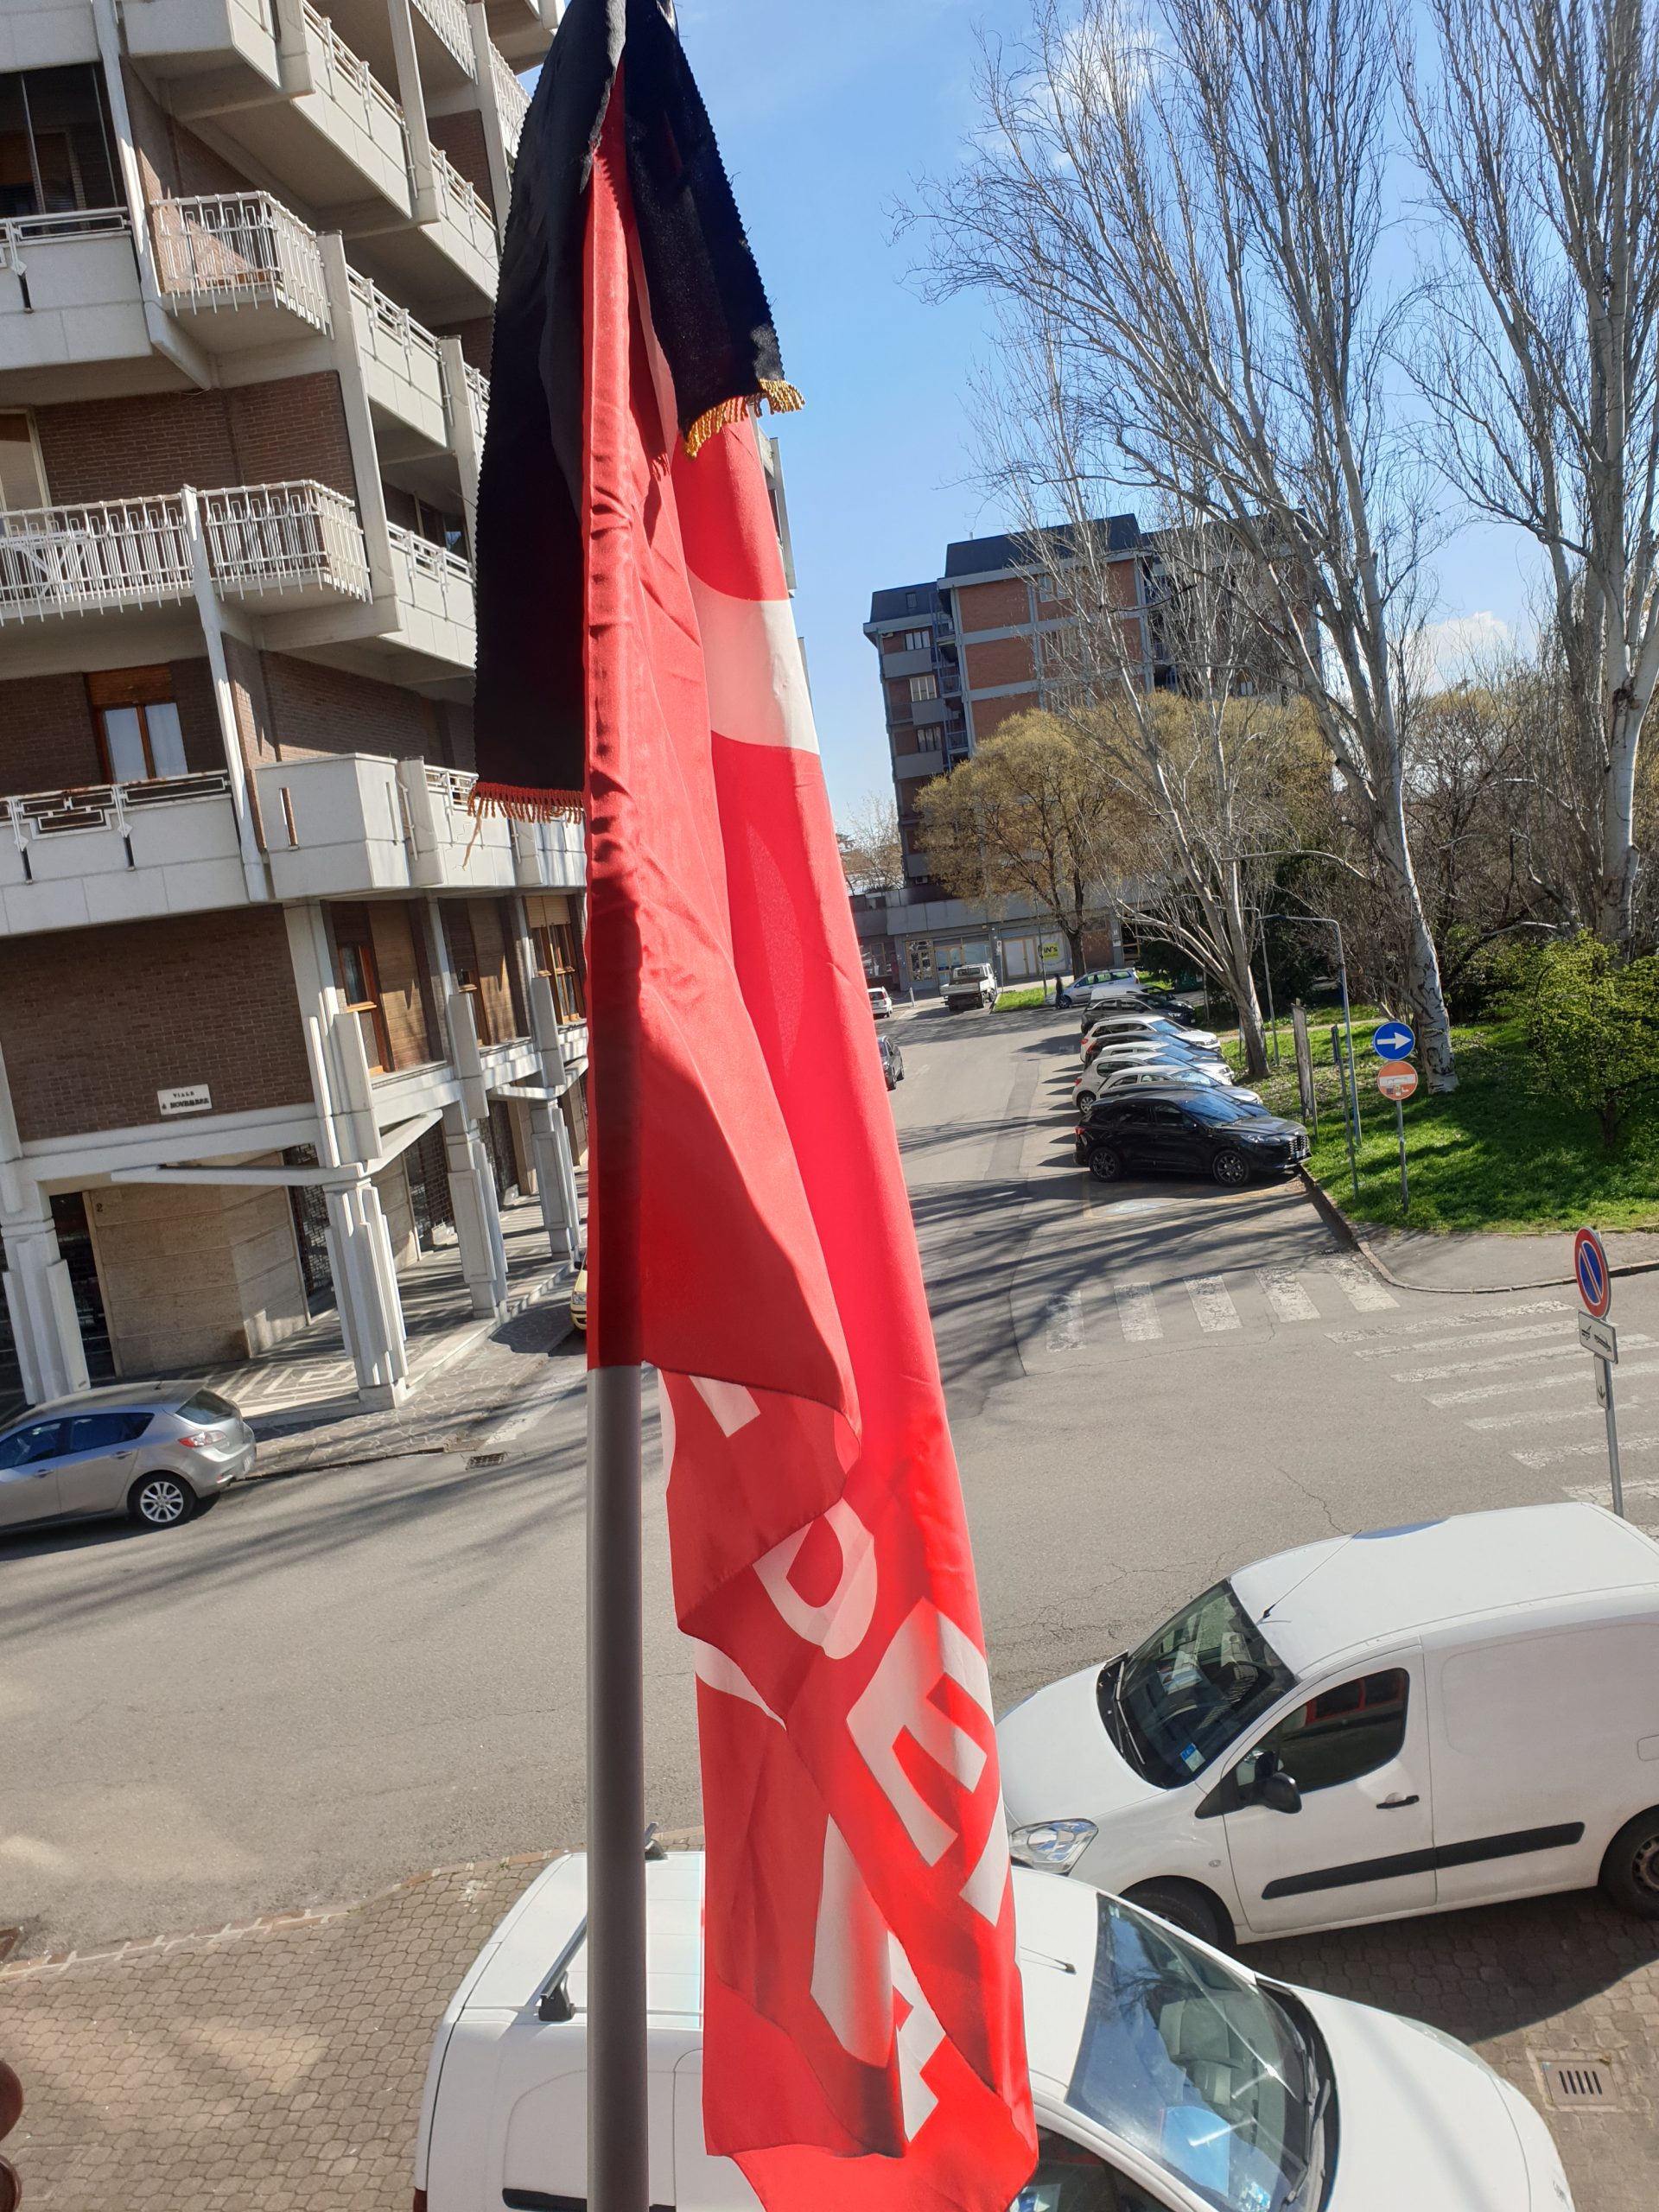 bandiera Cgil listata a Lutto, 18.3.21